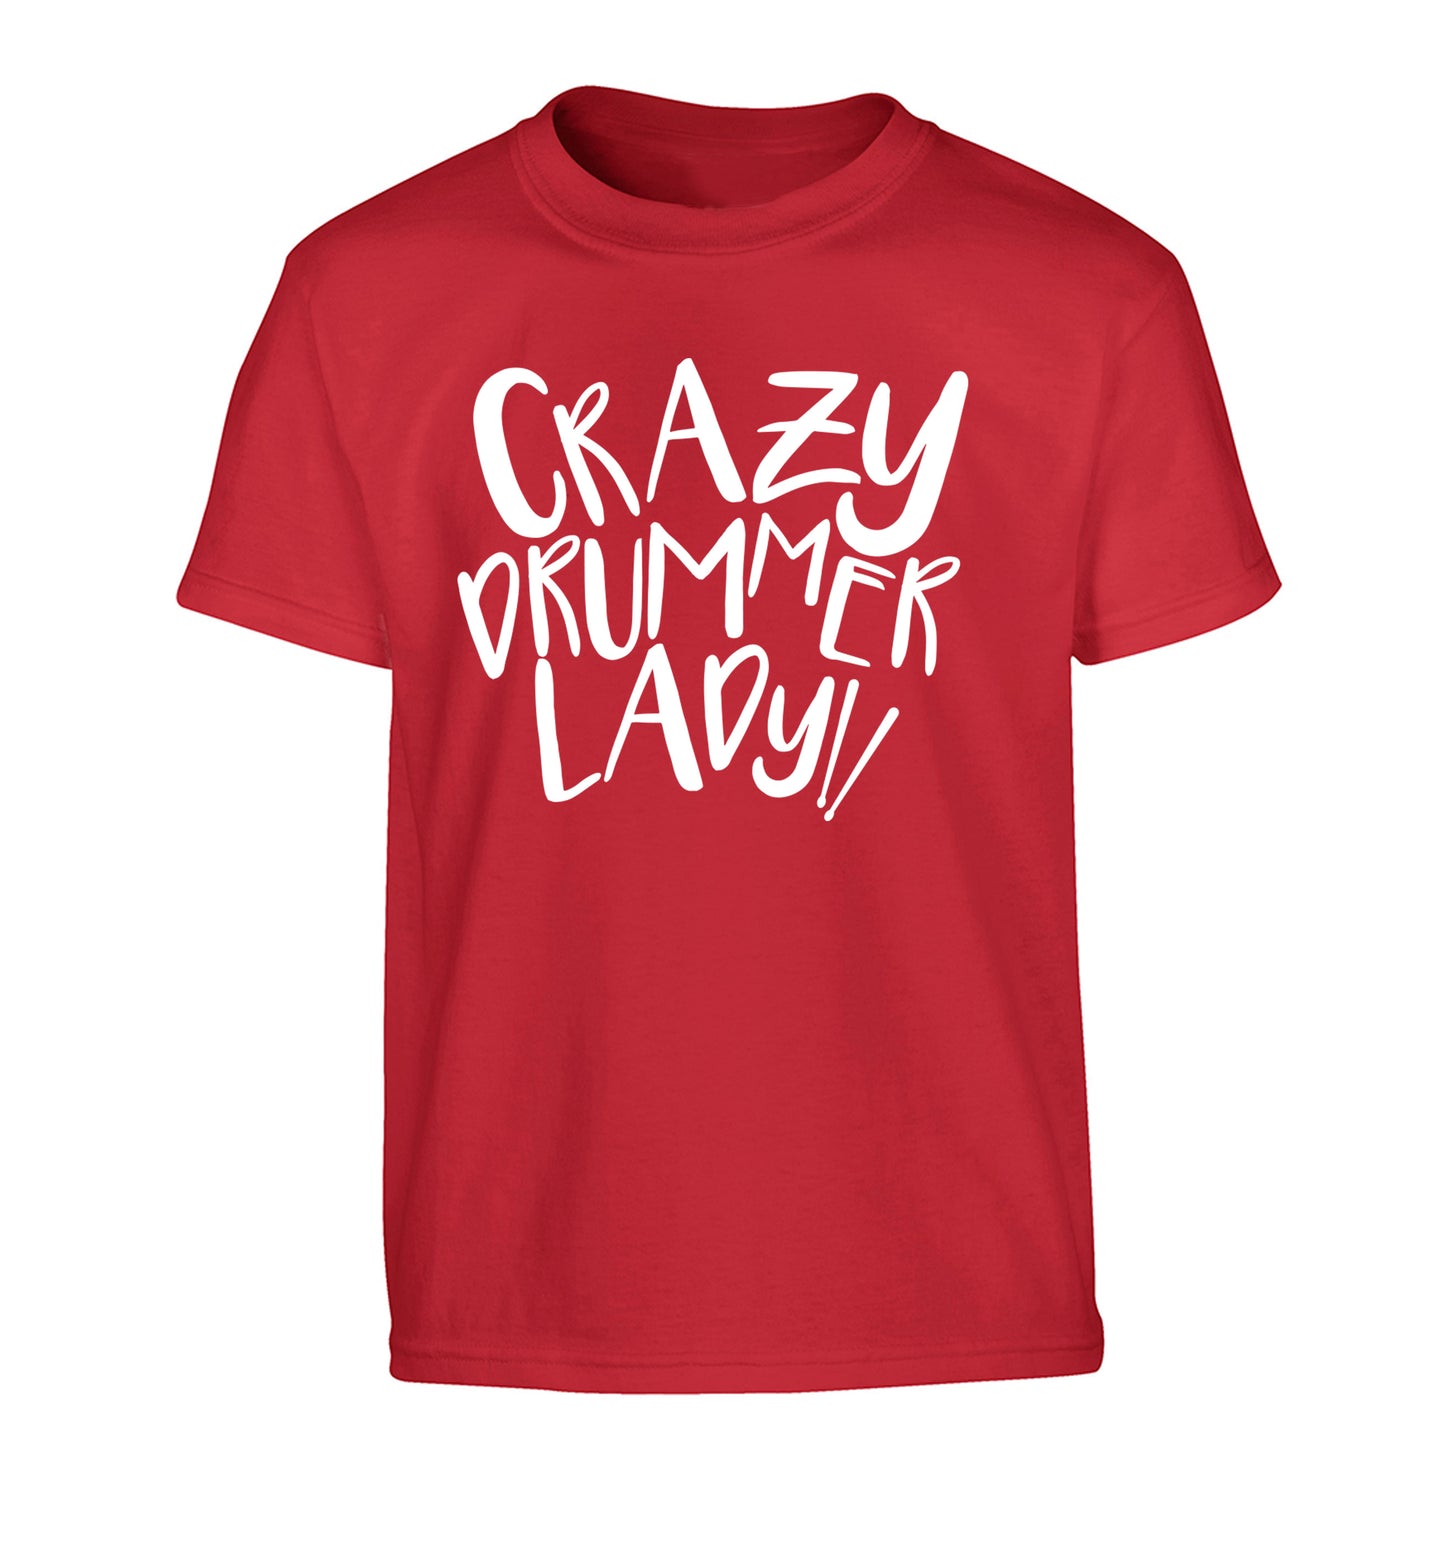 Crazy drummer lady Children's red Tshirt 12-14 Years